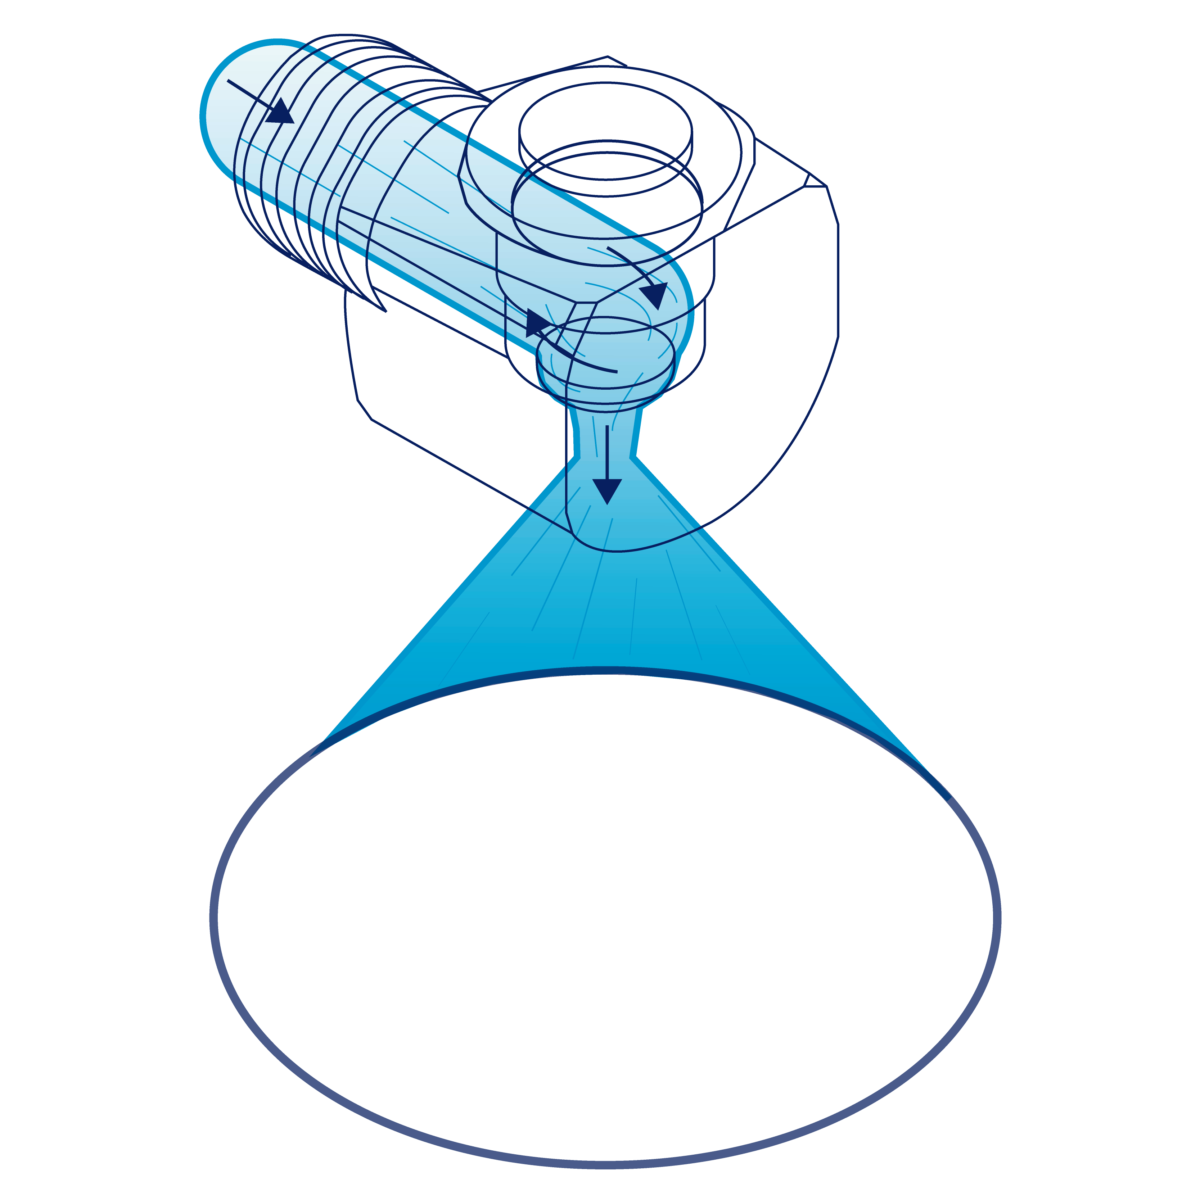 Tangentiell hålkonsdysa skapar en konformad spray där sprayen är koncentrerad till den yttre delen av konen och formar en ring. Den utgående sprayen är 90° i relation till ingångsaxeln.